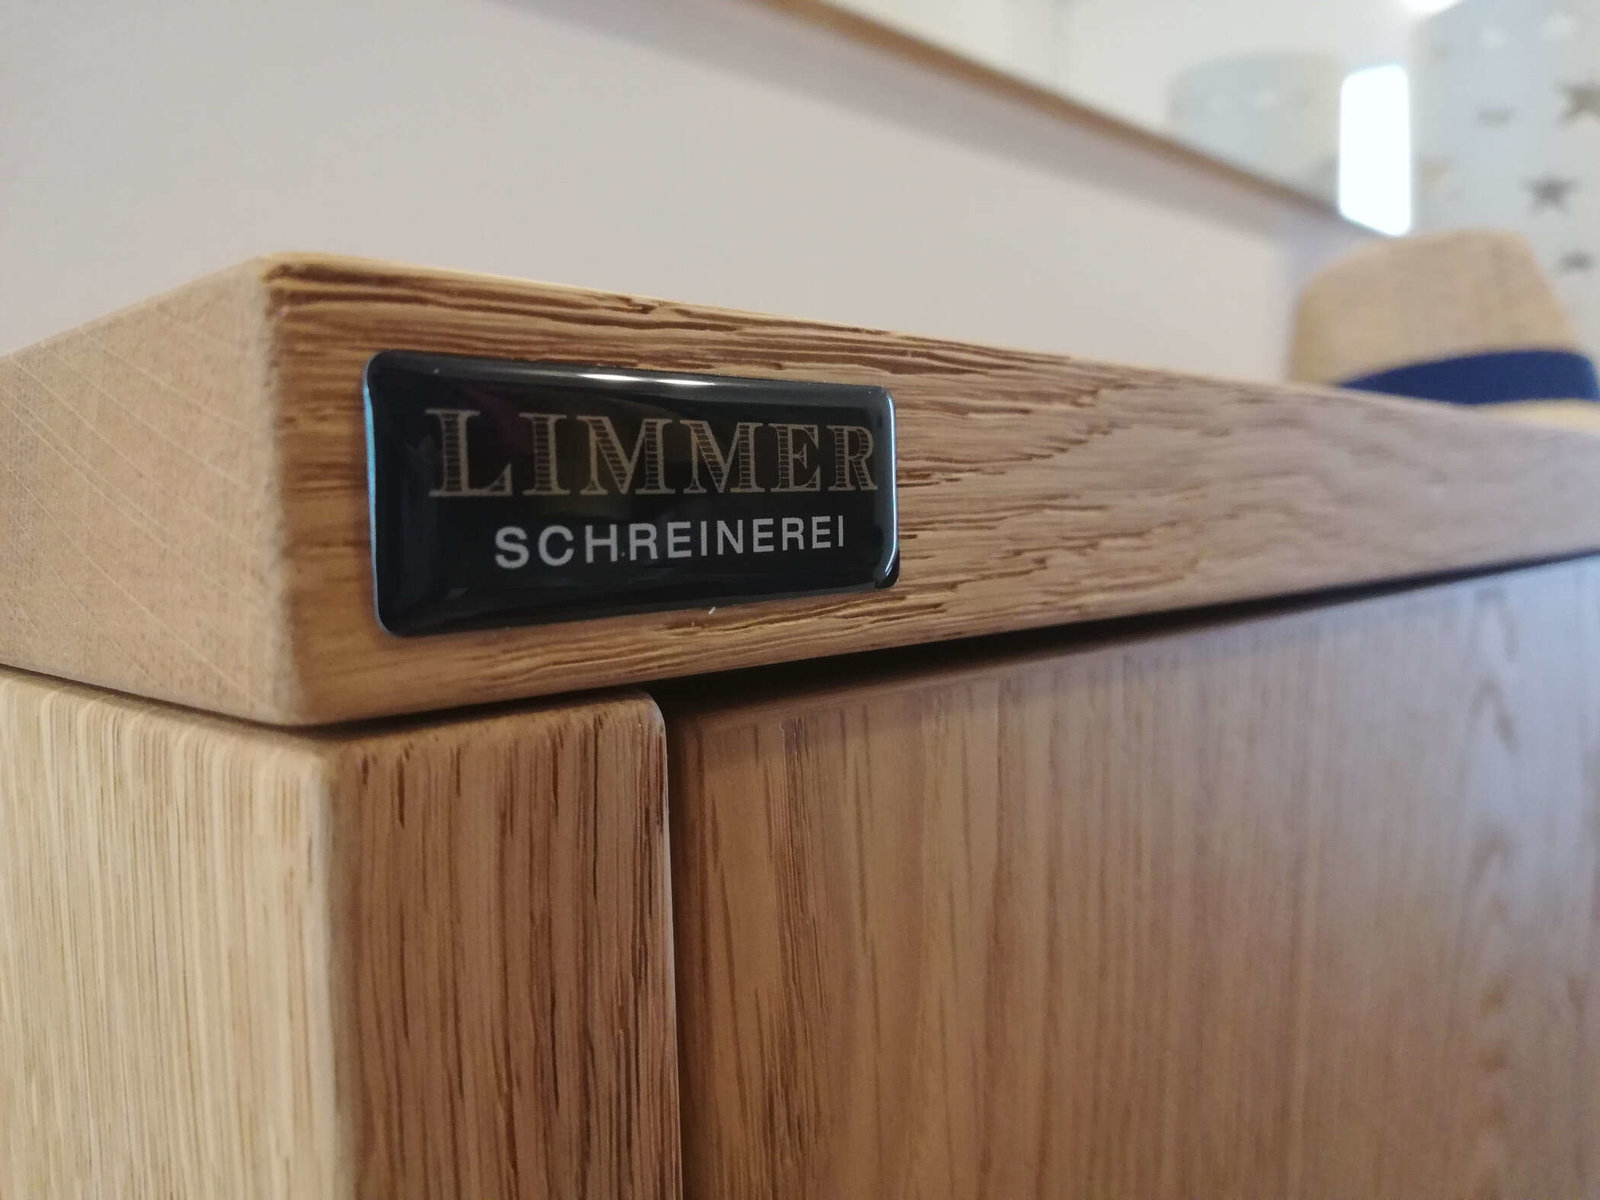 Möbel der Schreinerei Thomas Limmer